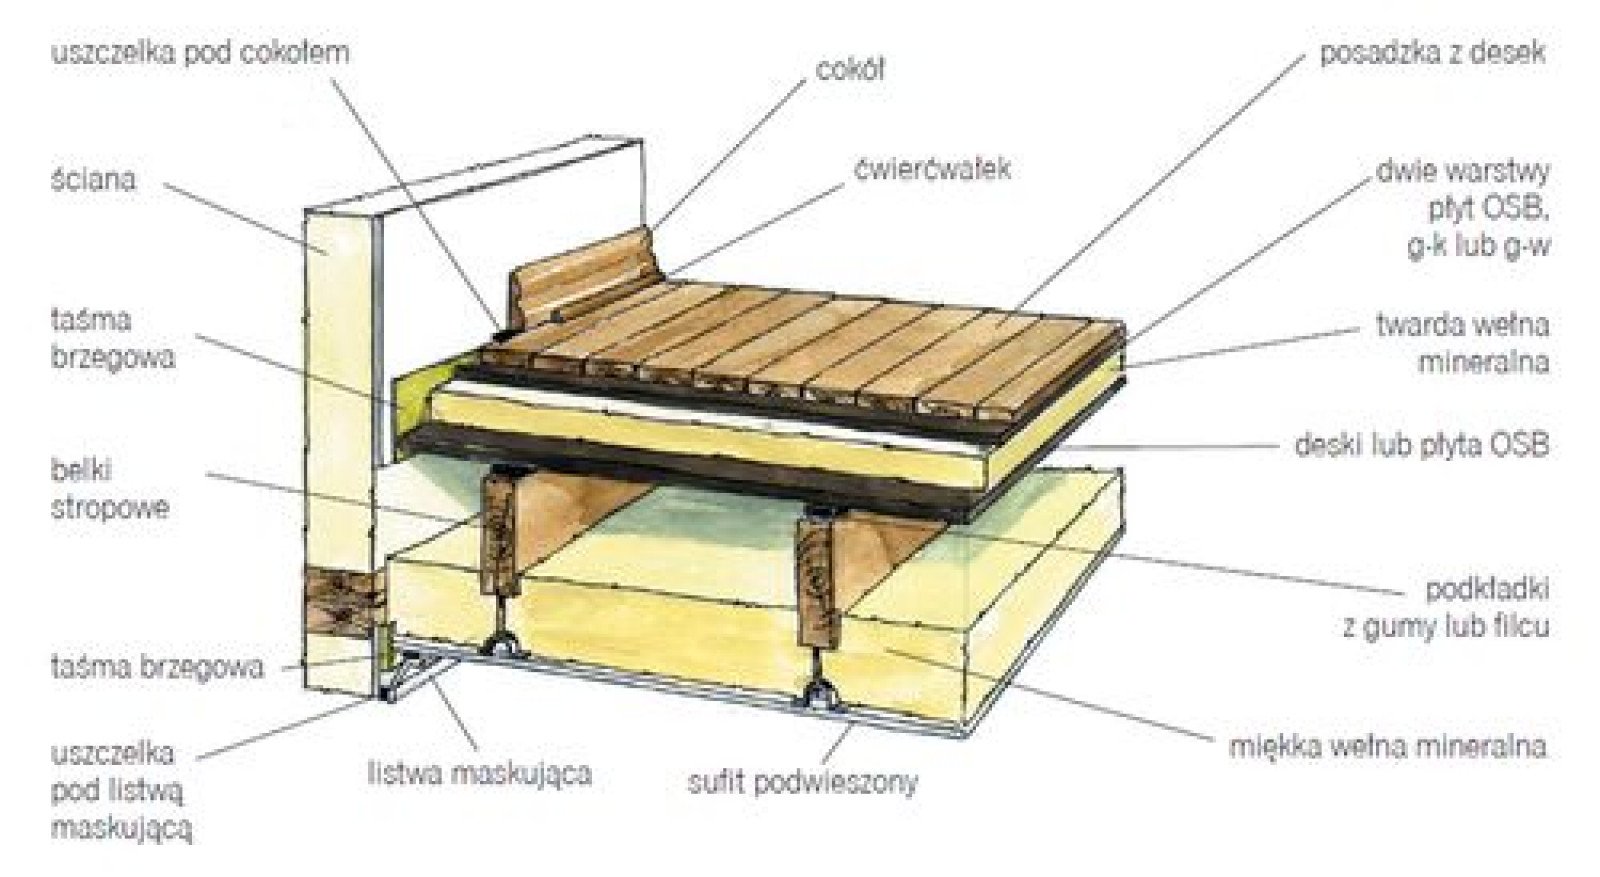 Звукоизоляция деревянного перекрытия. Шумоизоляция пола 2 этажа в деревянном доме. Схема межэтажного перекрытия по деревянным балкам. Звукоизоляция перекрытия по деревянным балкам. Шумоизоляция для межэтажного перекрытия по деревянным балкам схема.